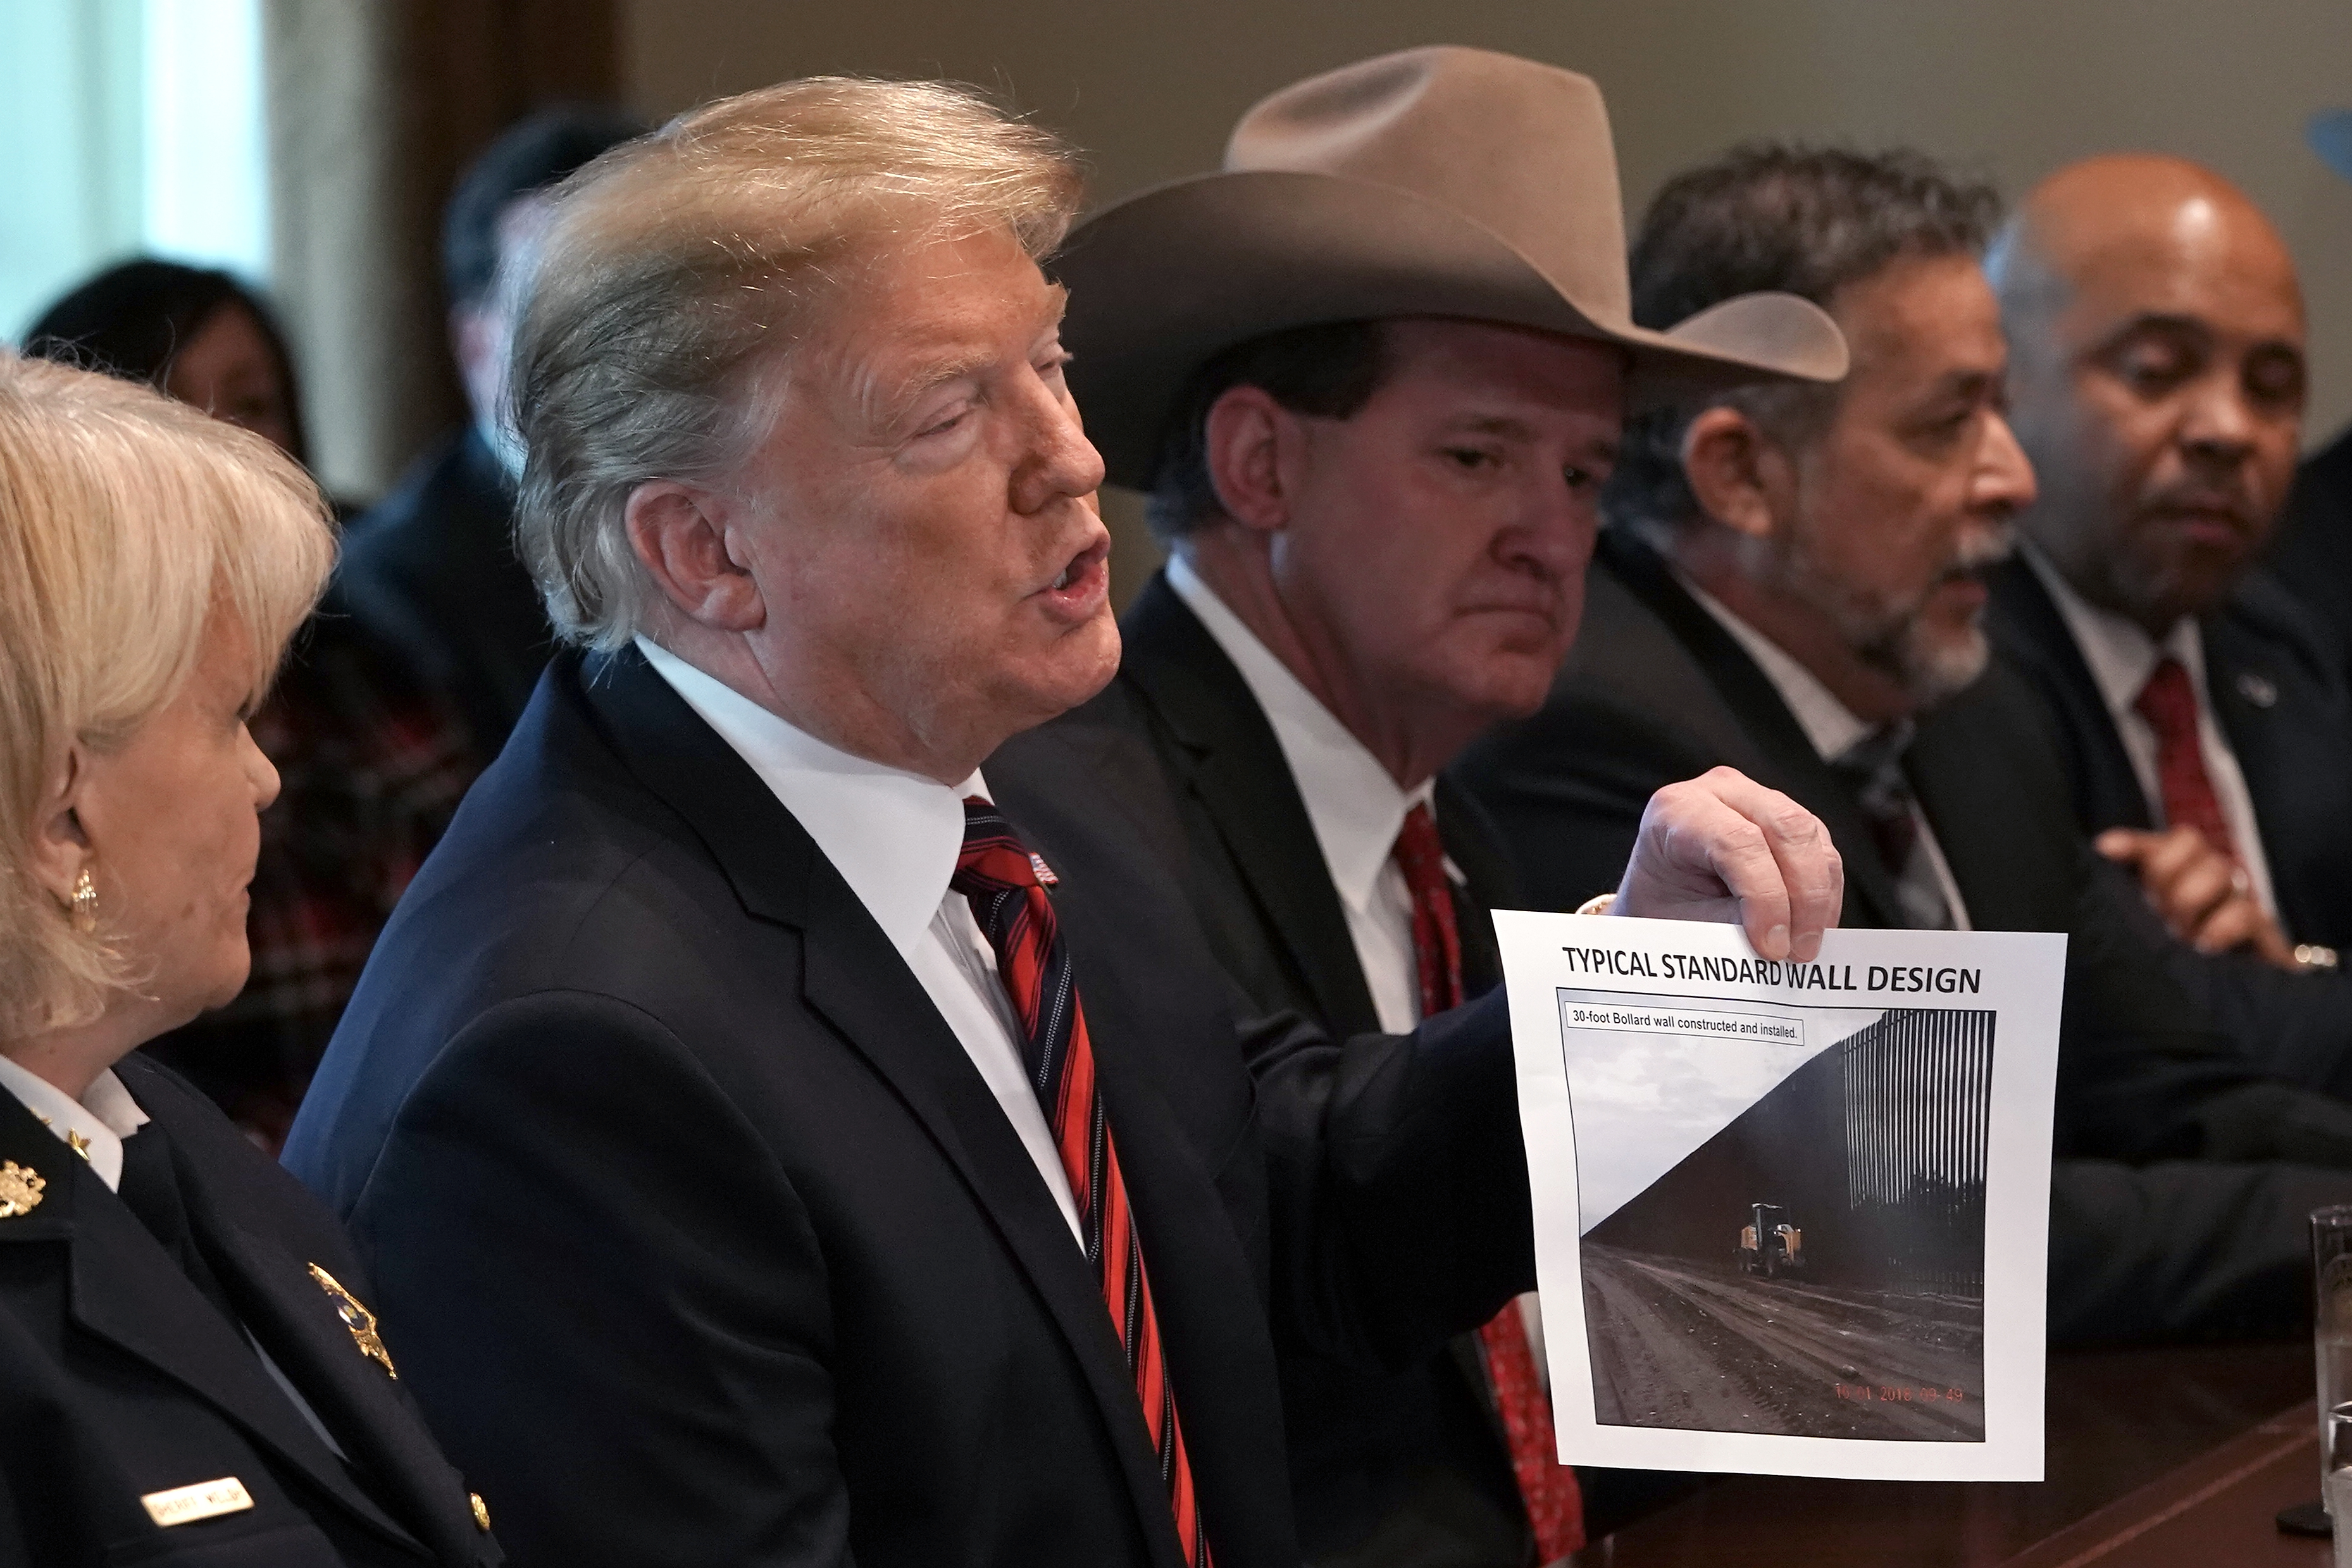 El Presidente Donald Trump sostiene una foto con el escrito "diseño típico estandar del muro" durante una reunión en la Casa Blanca.